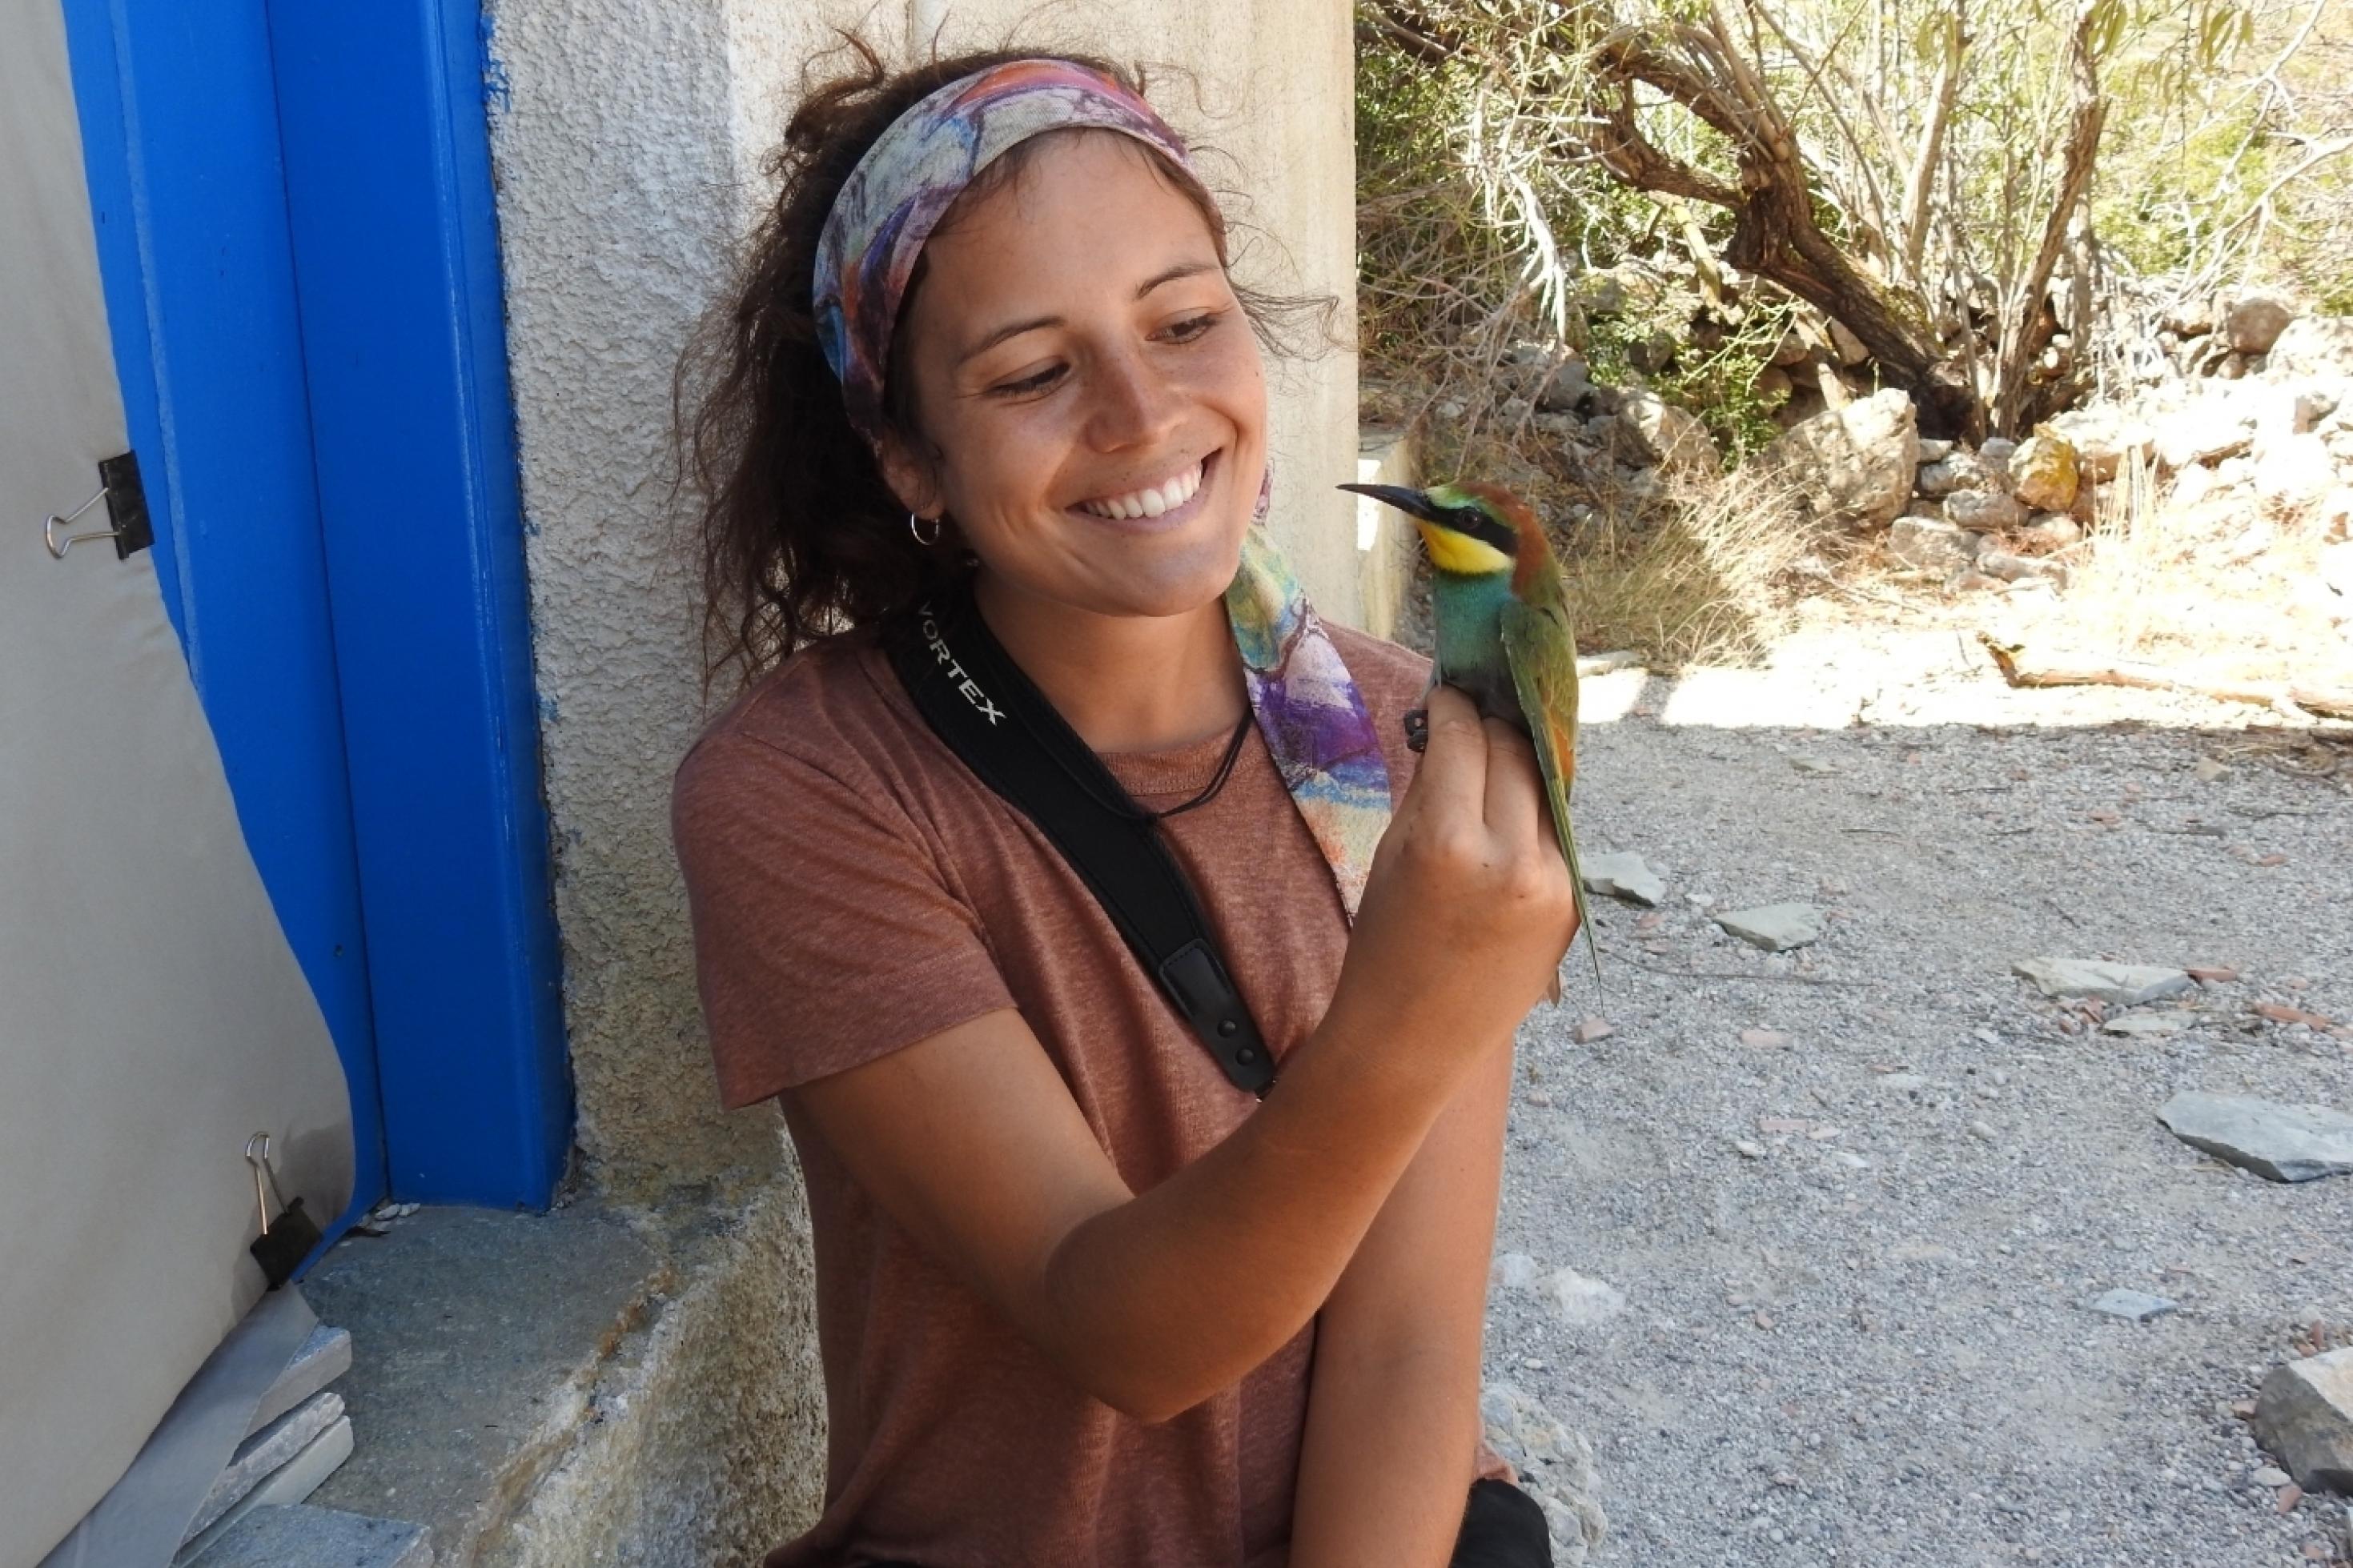 Die junge Ornithologin Verena Rupprecht sitzt vor einer Hütte und hält einen bunten Vogel in der Hand, einen Bienenfresser